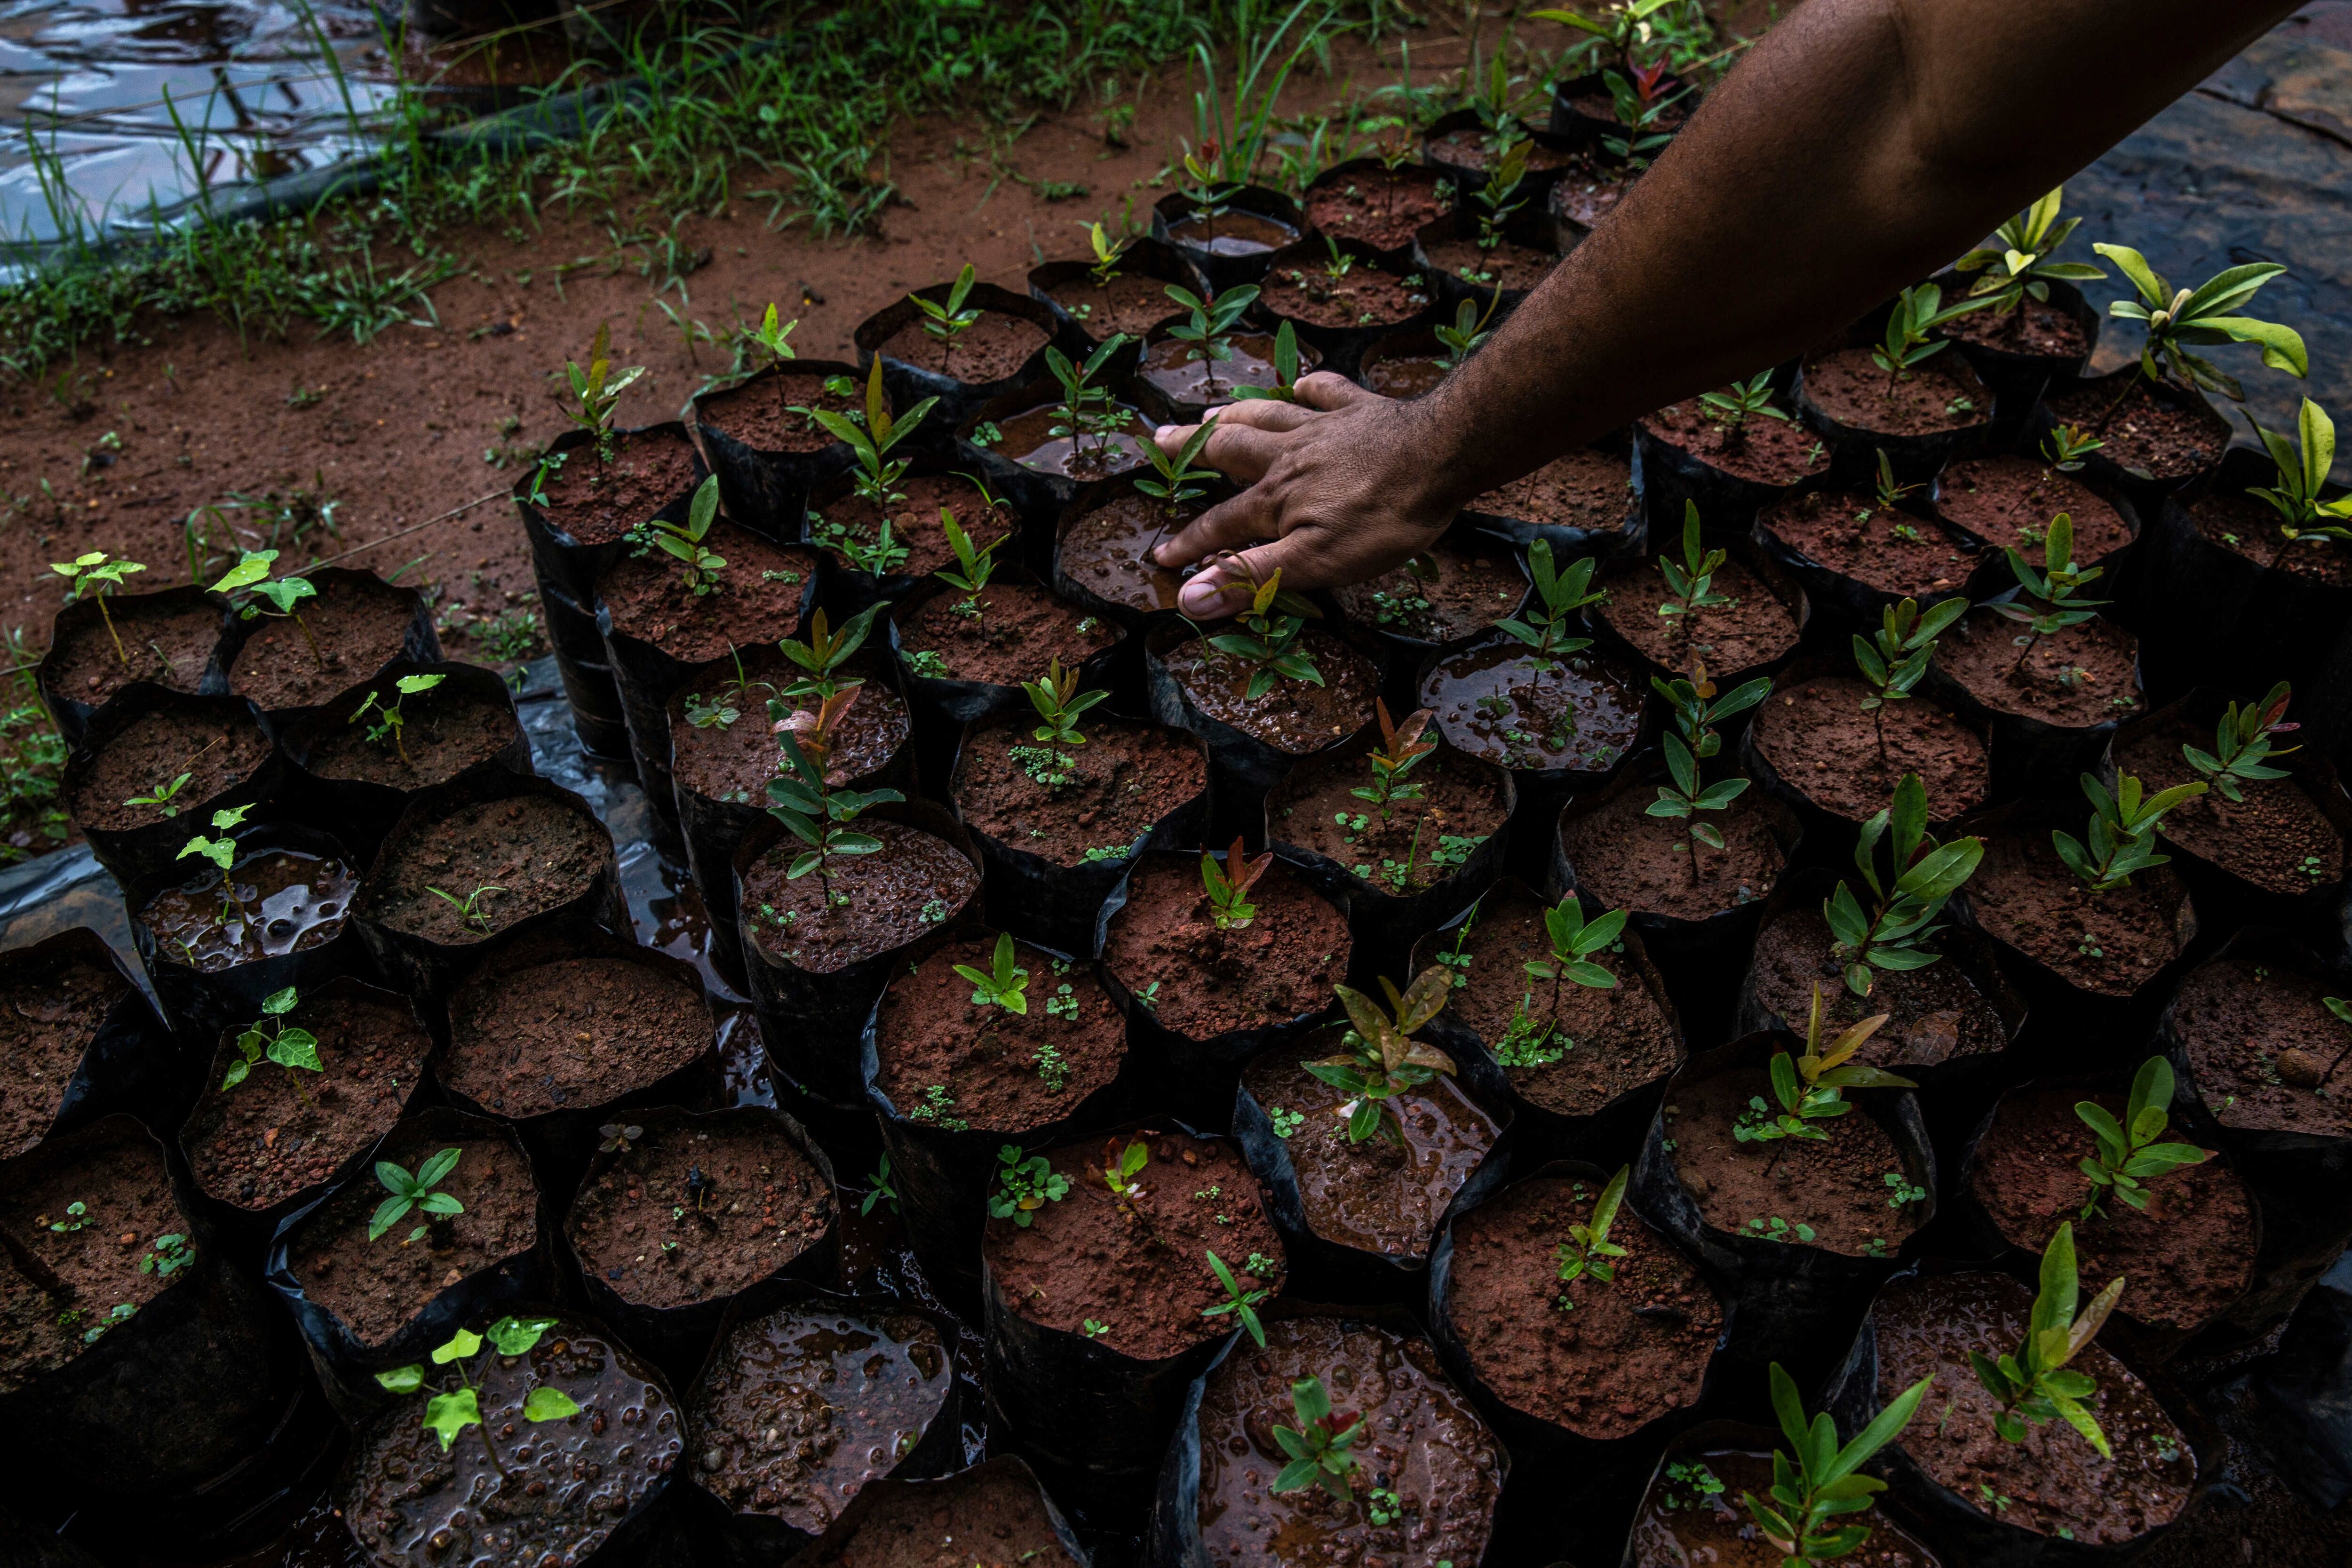 Un invernadero mantiene controladas las plántulas de árboles nativos del Cerrado en el invernadero y almacén de semillas de la Red de Semillas de Xingu, recolectadas por las comunidades nativas y tradicionales de la región para proyectos de regeneración en todo el bioma del Cerrado, en Canarana, Mato Grosso, Brasil.